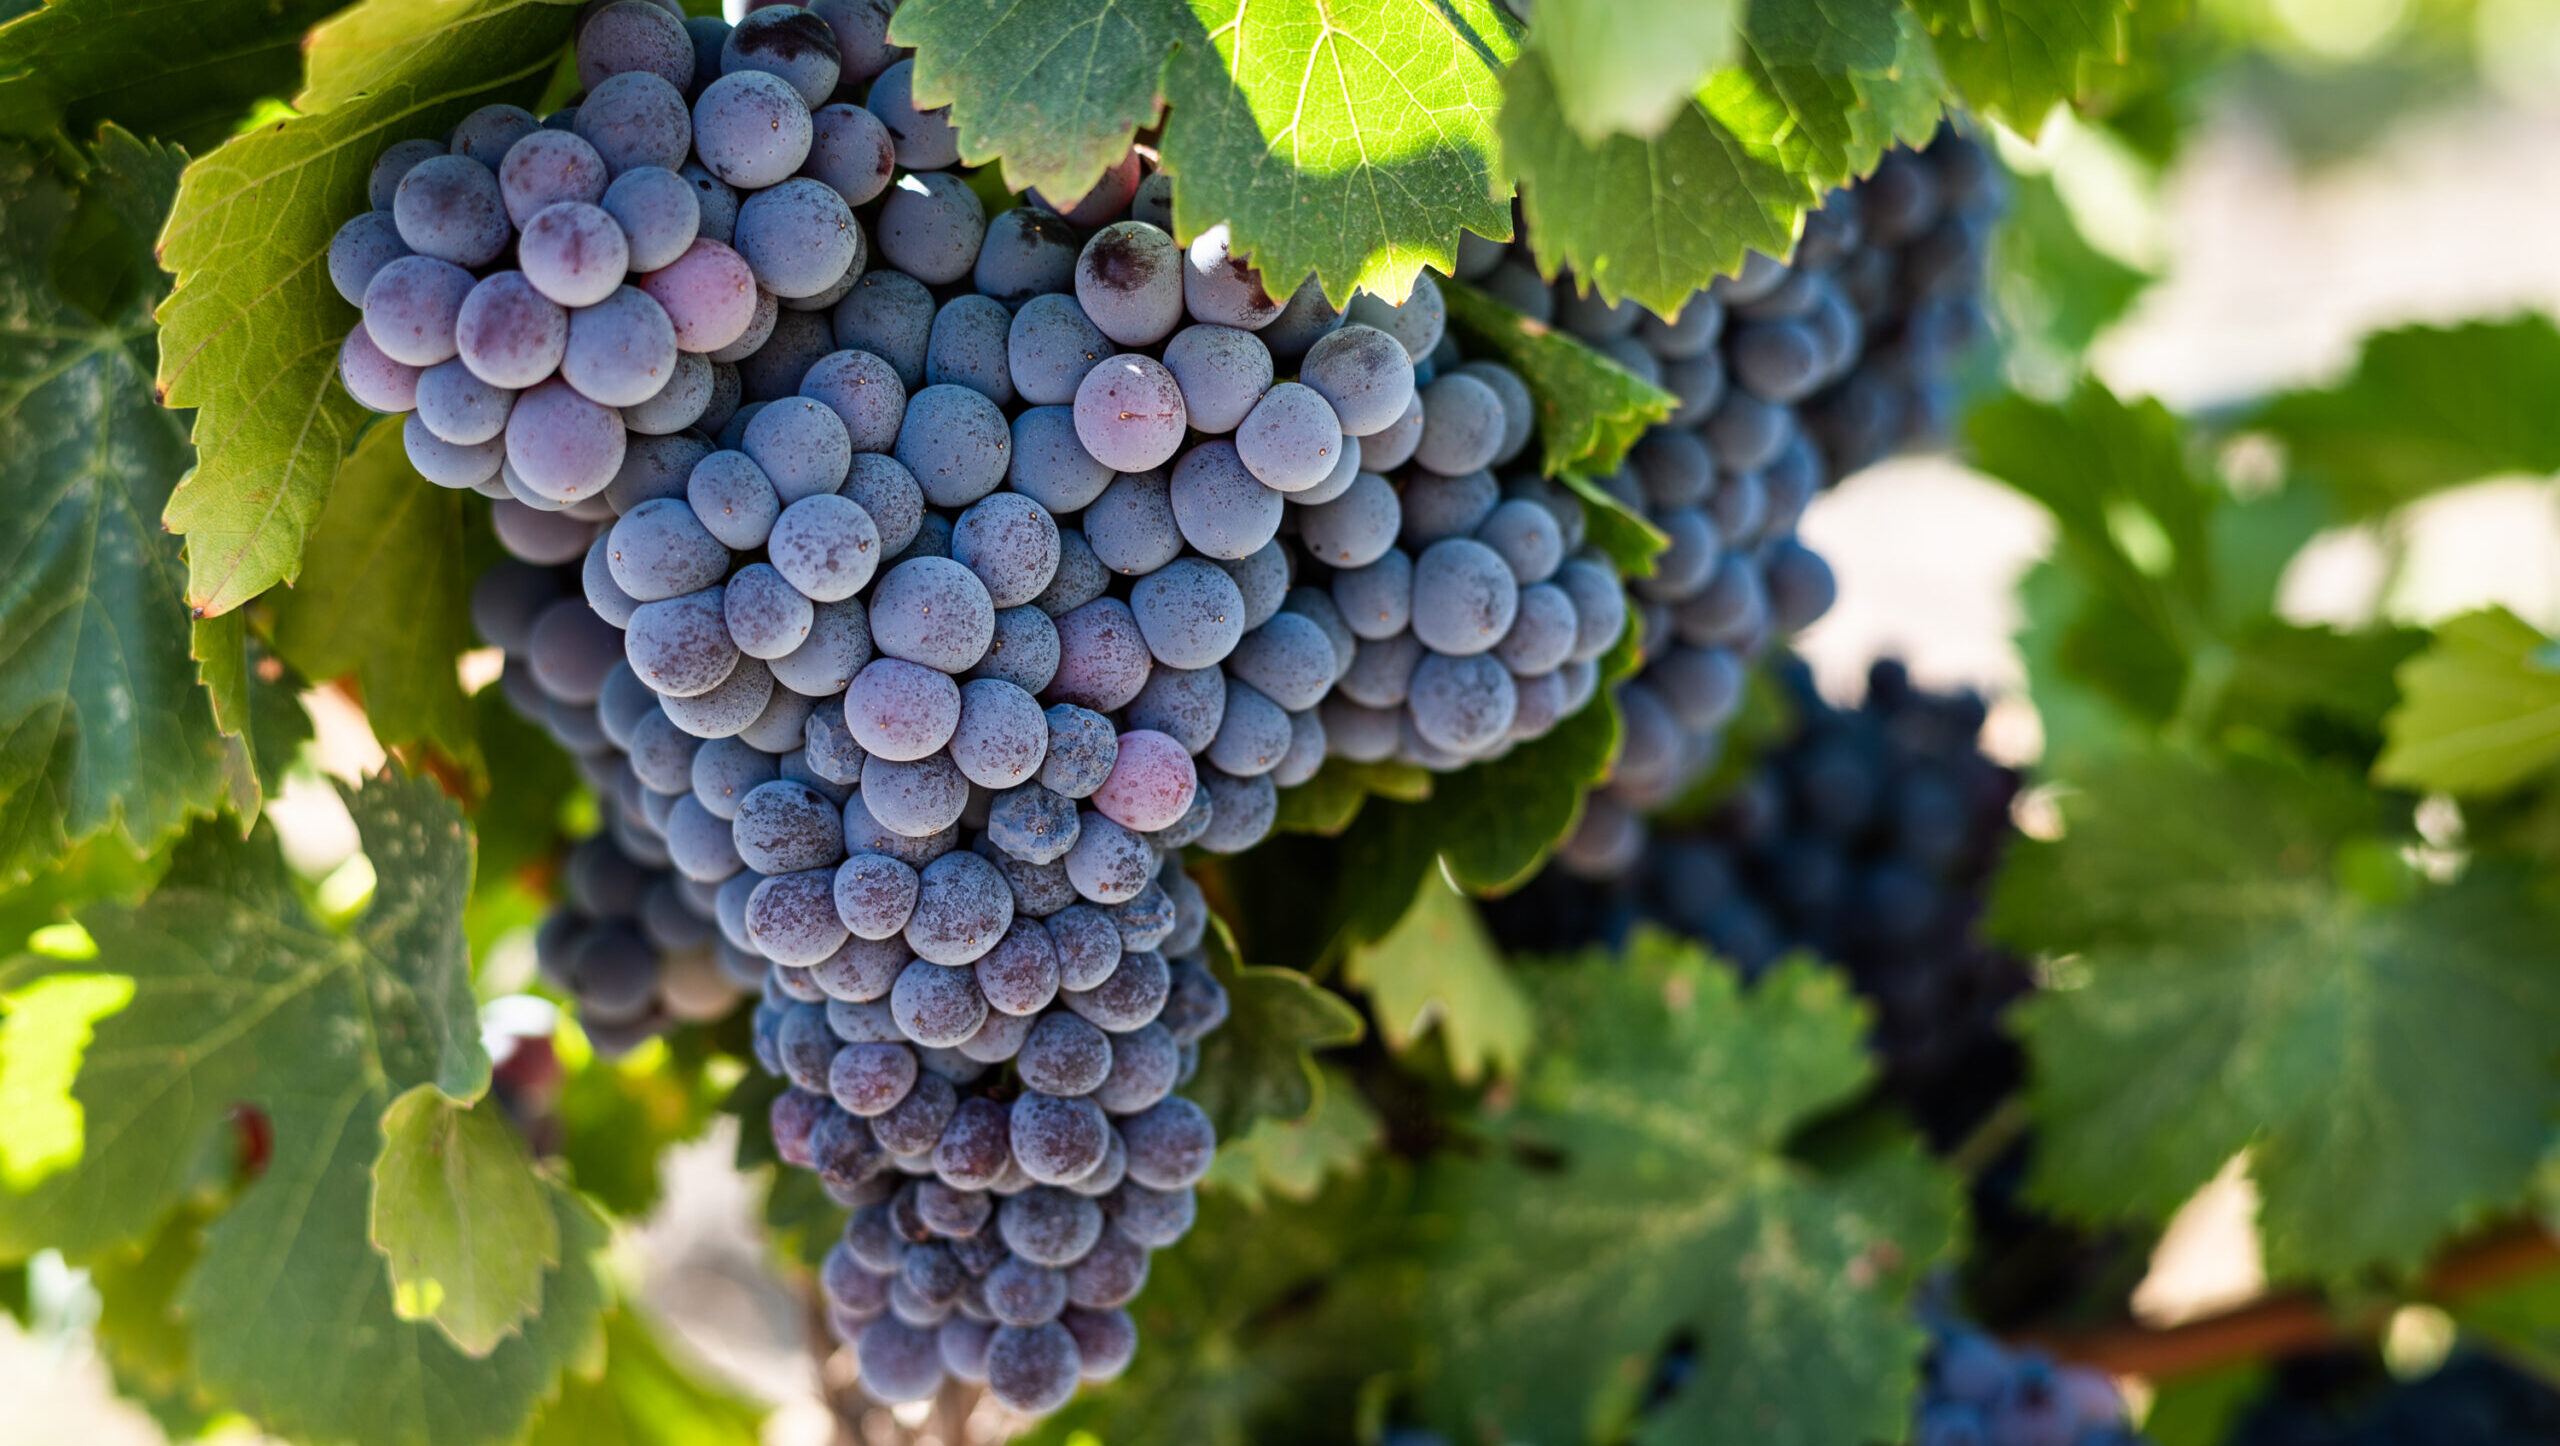 California grapes in vineyard